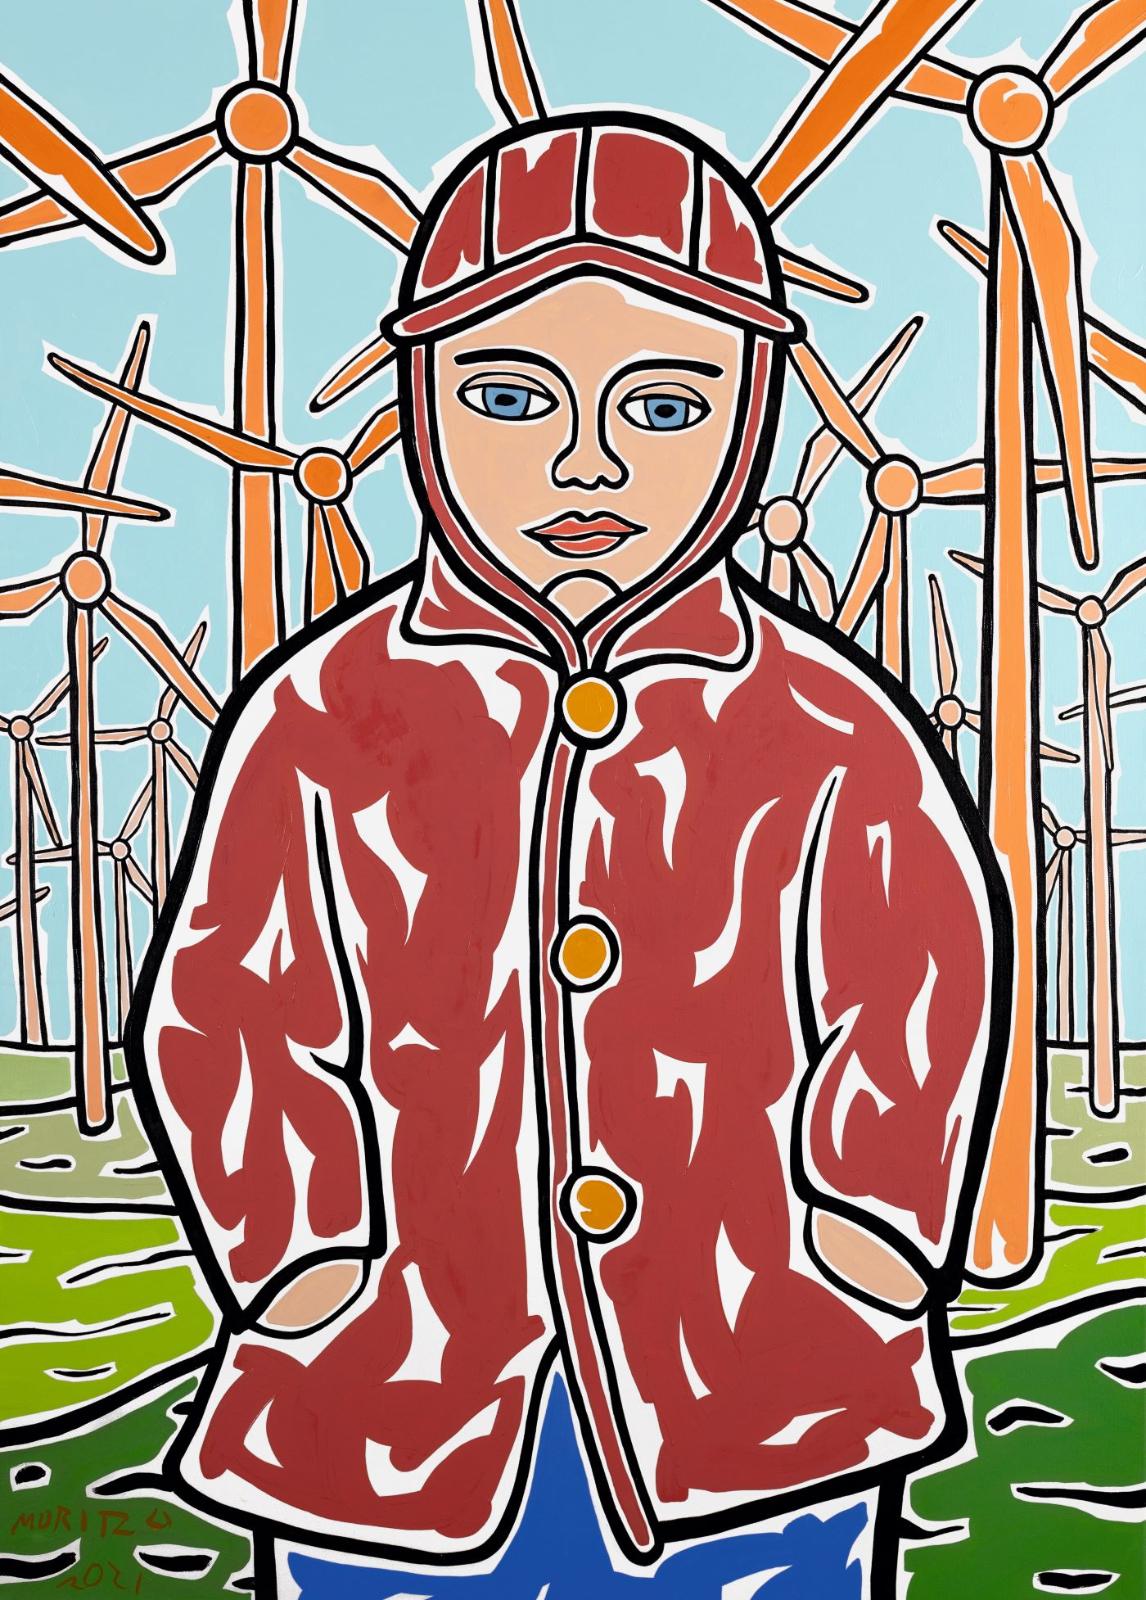 Moritz Götze, Peter im Windpark (nach Hakenbeck), 2021, Öl auf Leinwand, 140 cm x 100 cm, Preis auf Anfrage, Galerie Cyprian Brenner